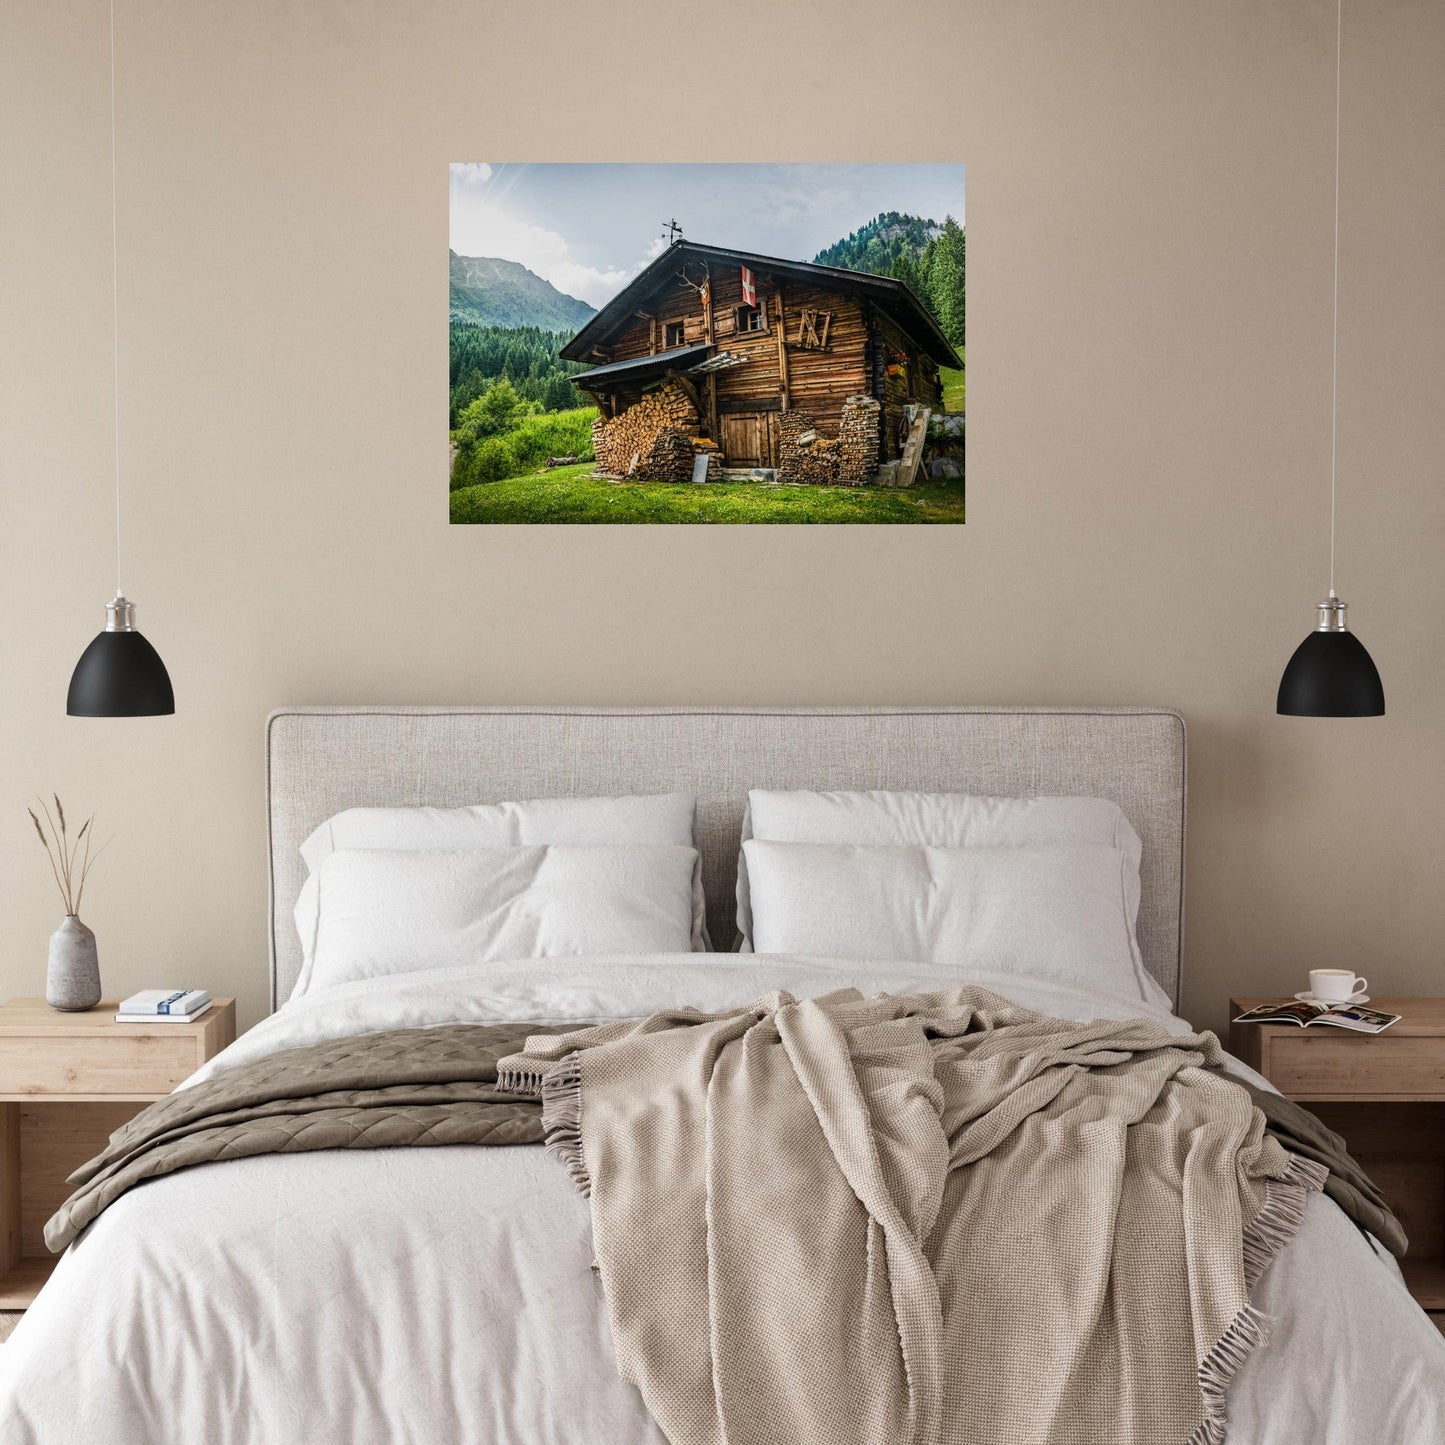 Vente Photo d'un chalet typique de Haute-Savoie, vallée des Contamines-Montjoie - Tableau photo alu montagne